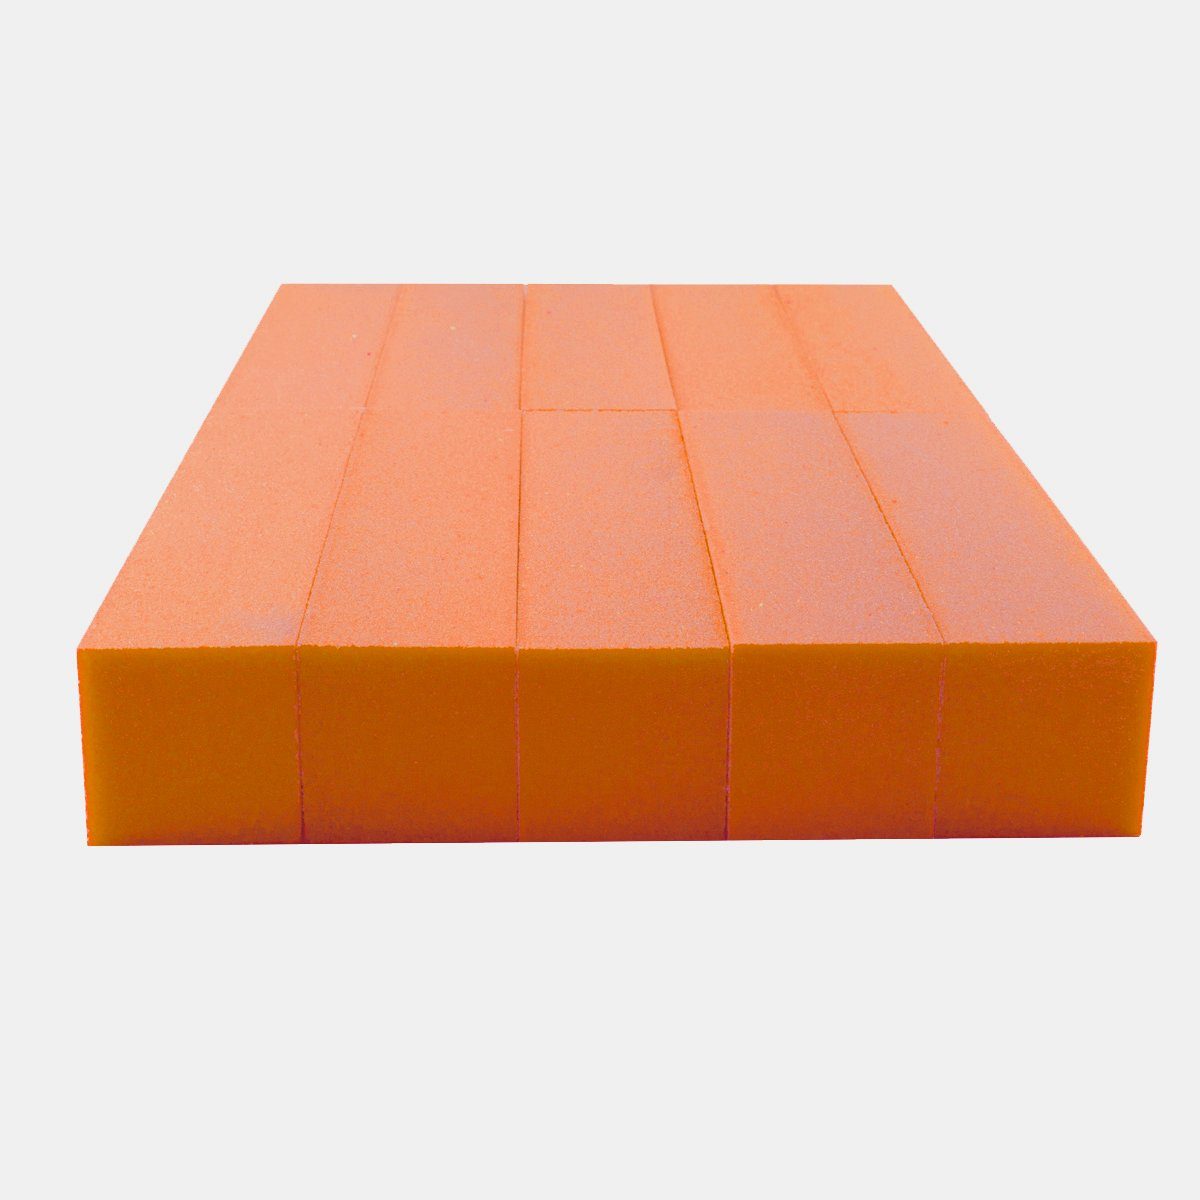 Sun Garden Nails Sandblatt-Nagelfeile für - Buffer Schleifblock Stück 10 Nagelmodellagen Feilblock - Orange